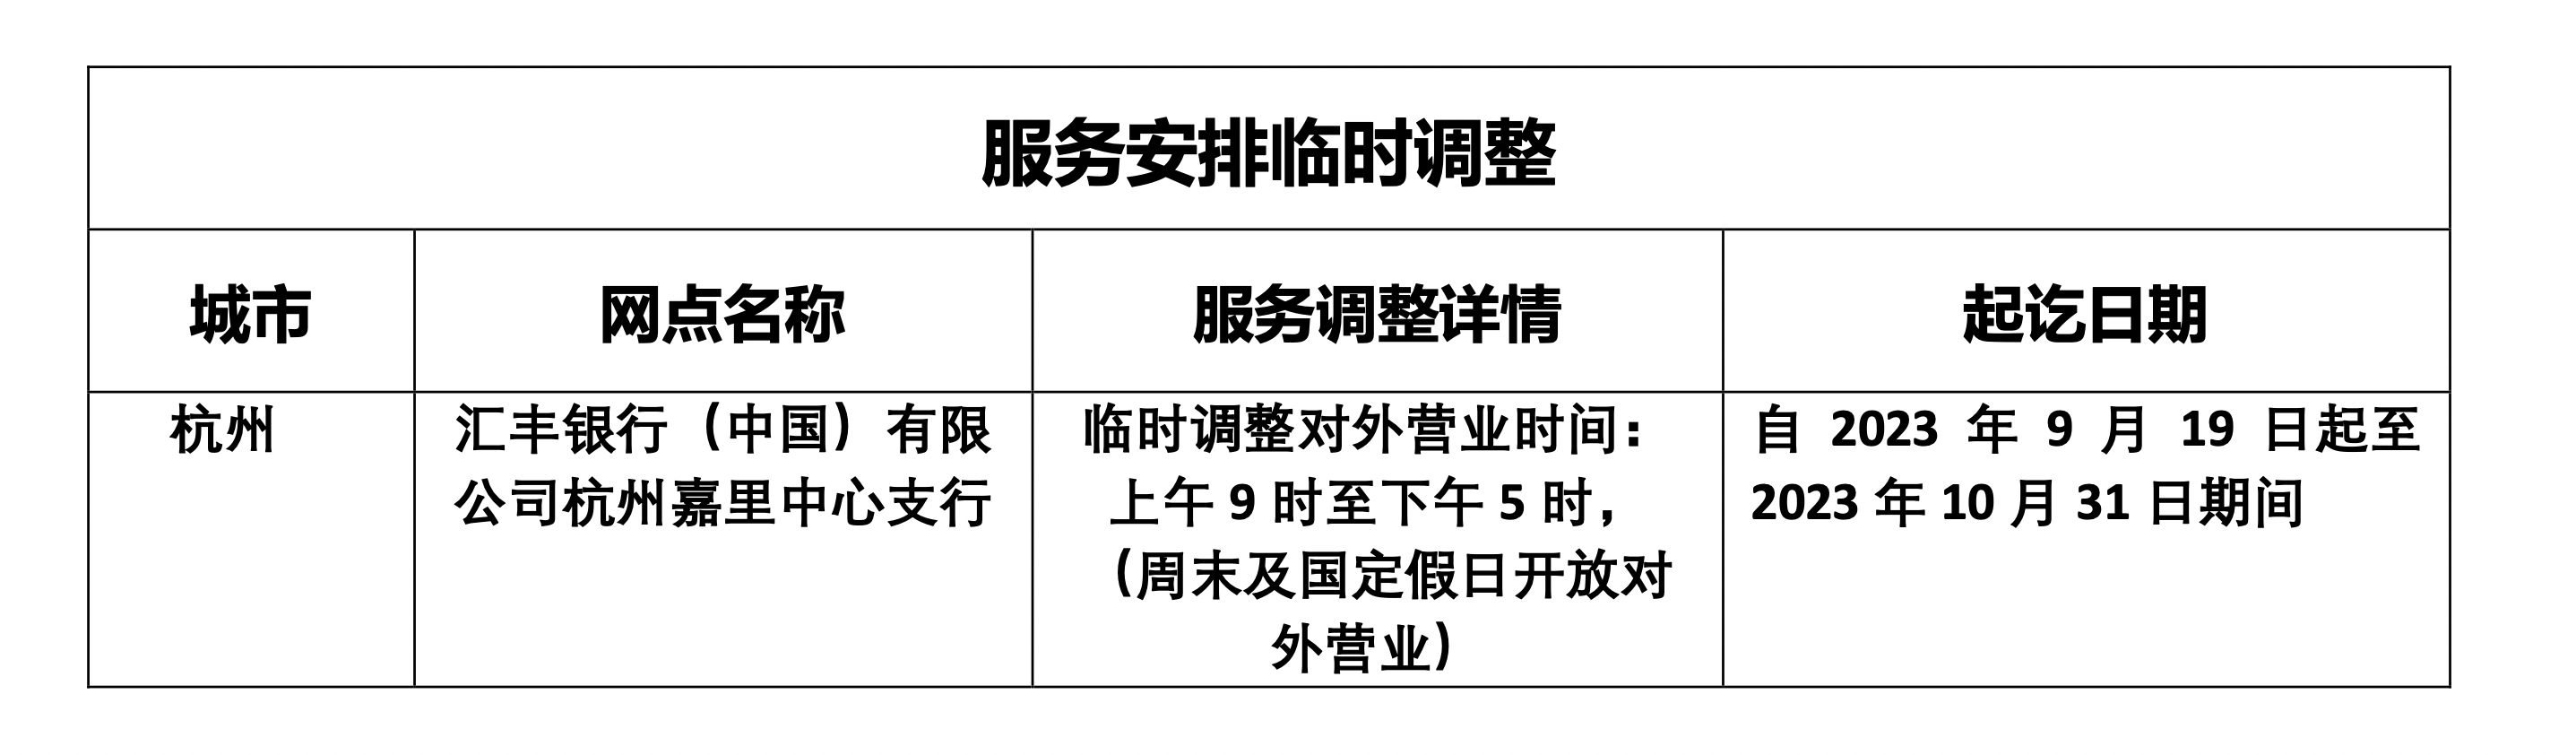  汇丰银行(中国)有限公司发布分支行个人业务服务安排临时调整的通知